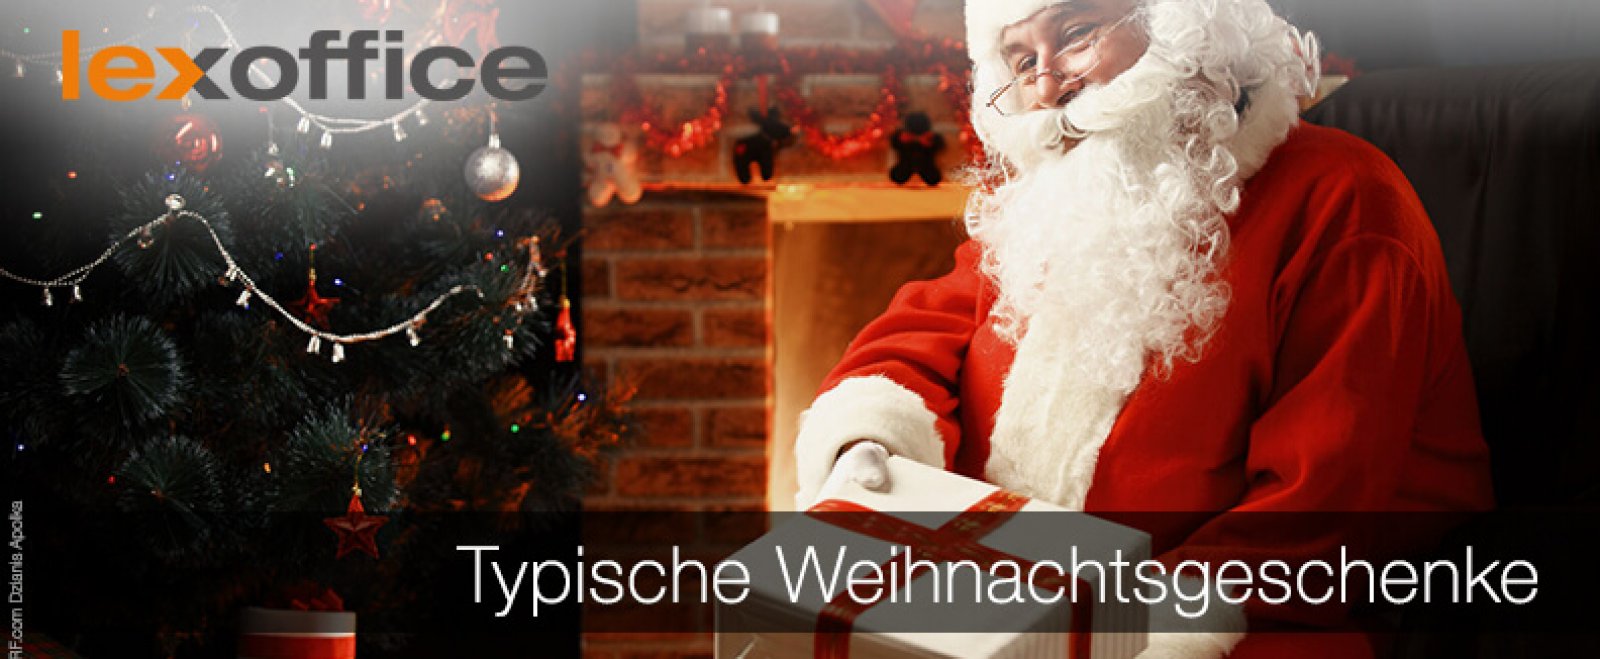 Was schenken die Deutschen? Typische Weihnachtsgeschenke